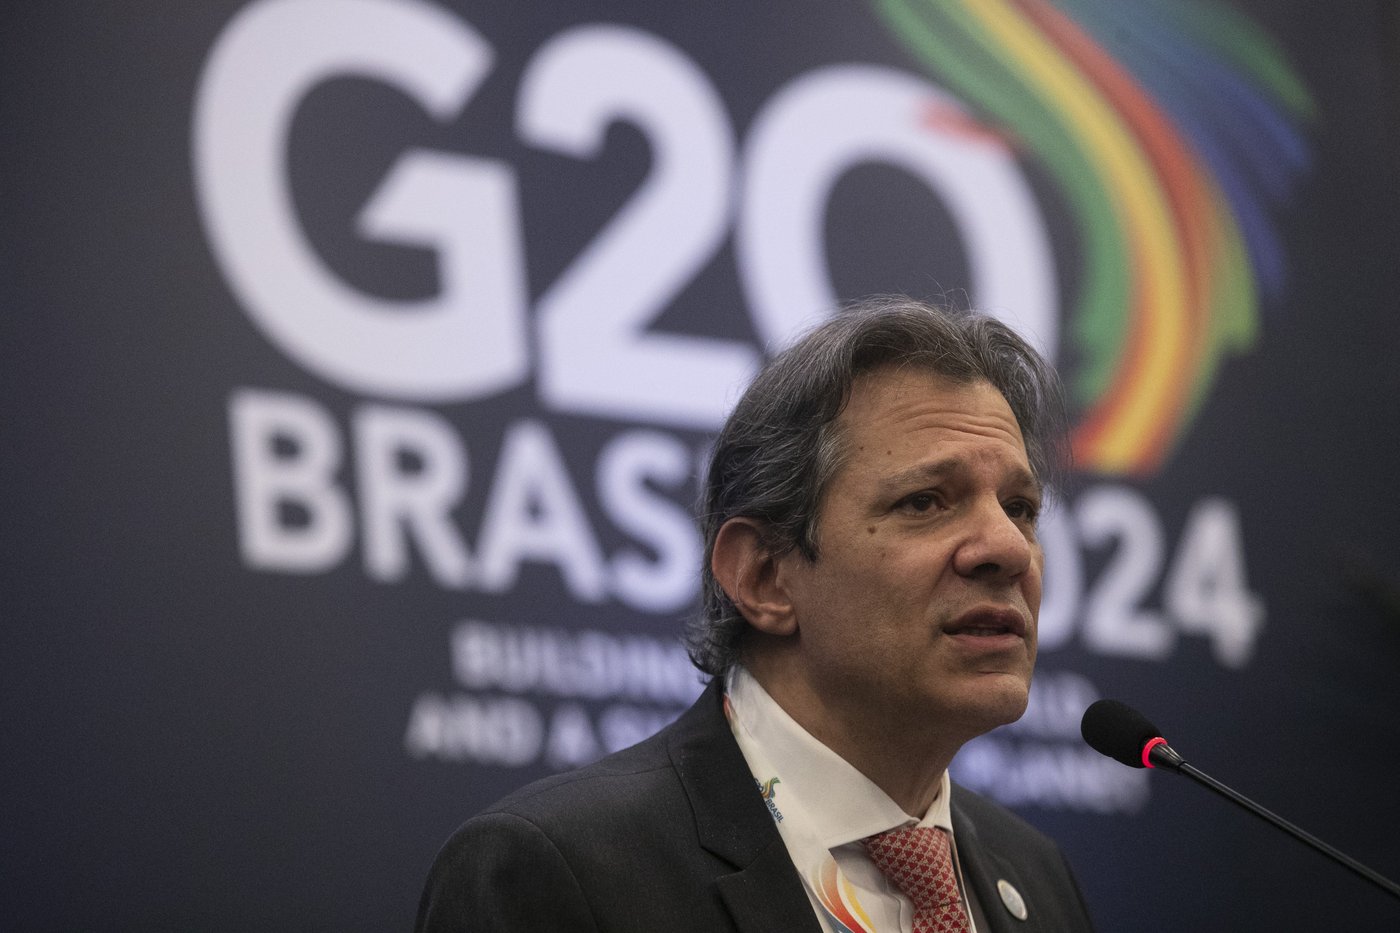 Des ministres des Finances du G20 veulent tenter de taxer efficacement les riches